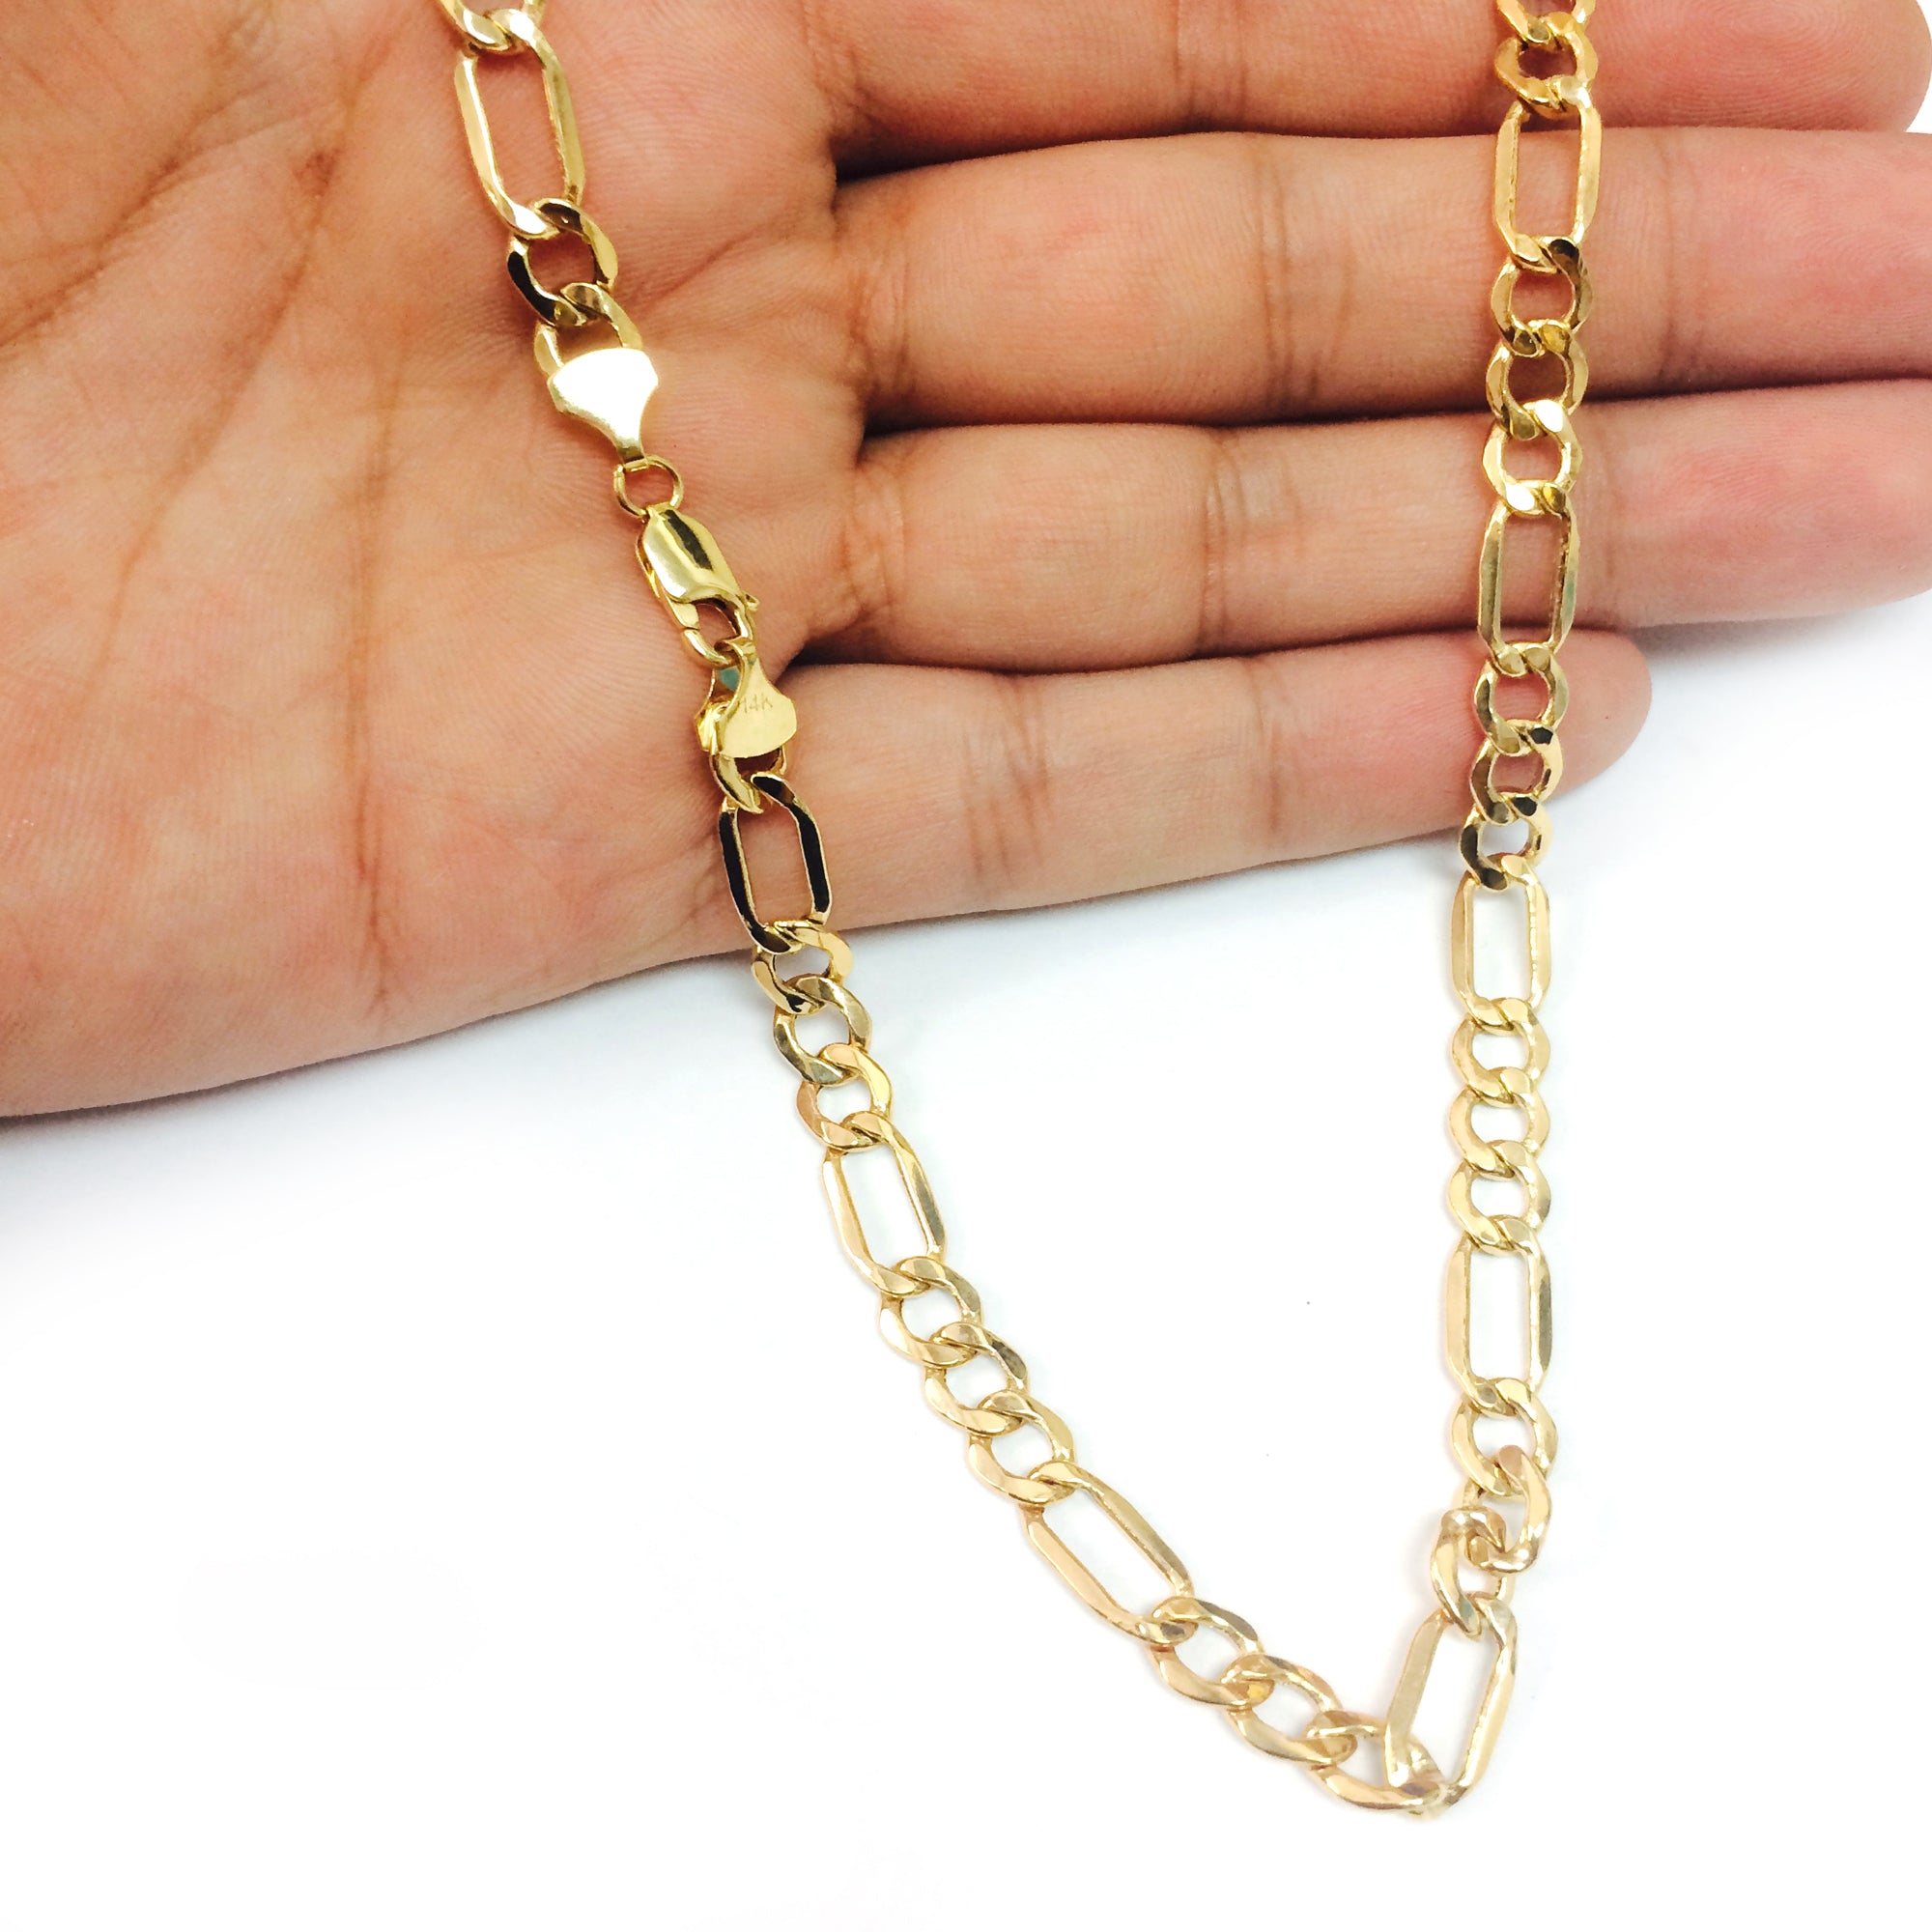 14k gult guld ihåligt Figaro Chain Halsband, 6,5 mm fina designersmycken för män och kvinnor